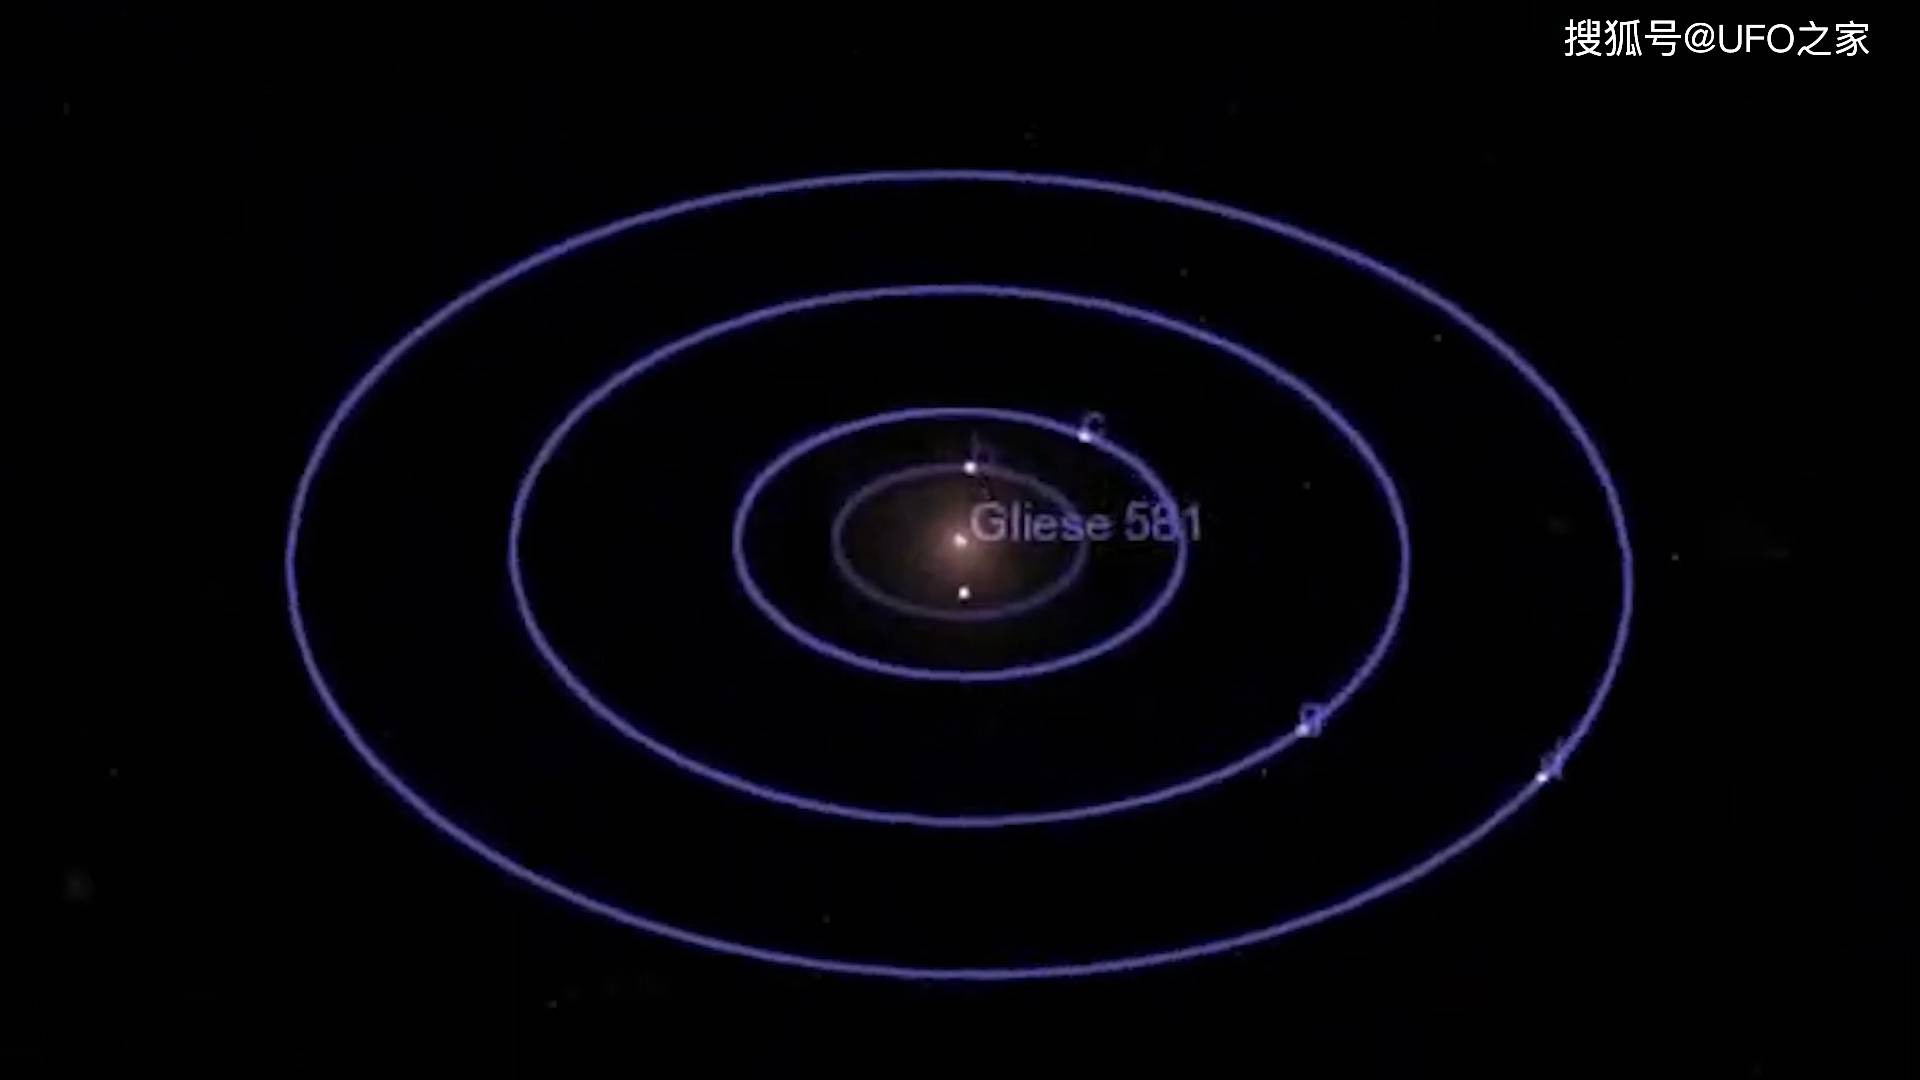 格利泽581行星系统图图片